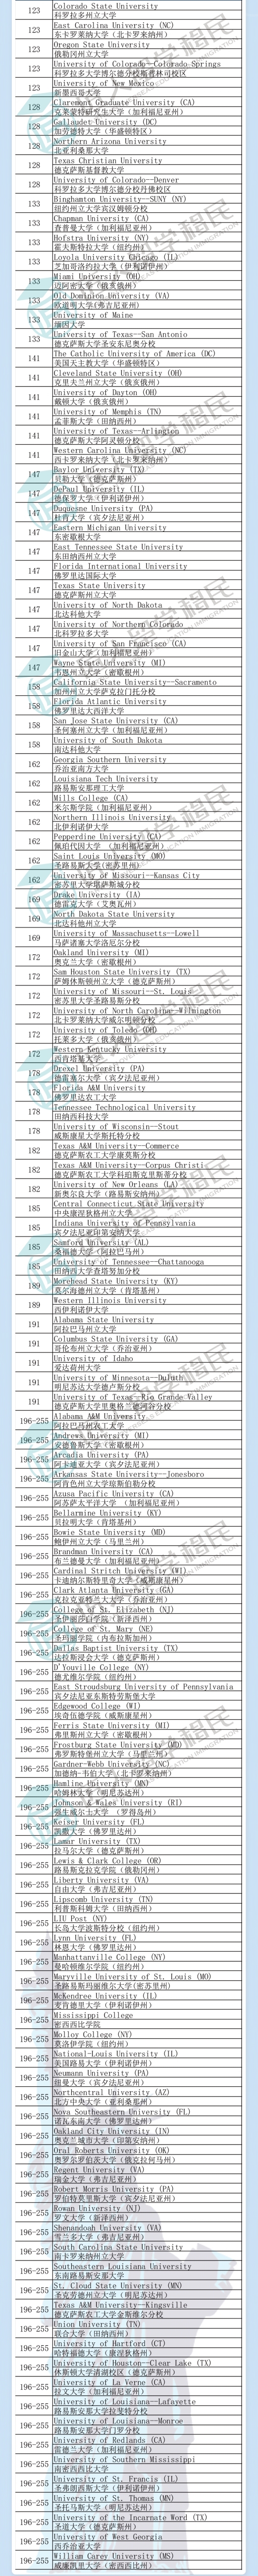 上海2021年度U.S.News教育排名